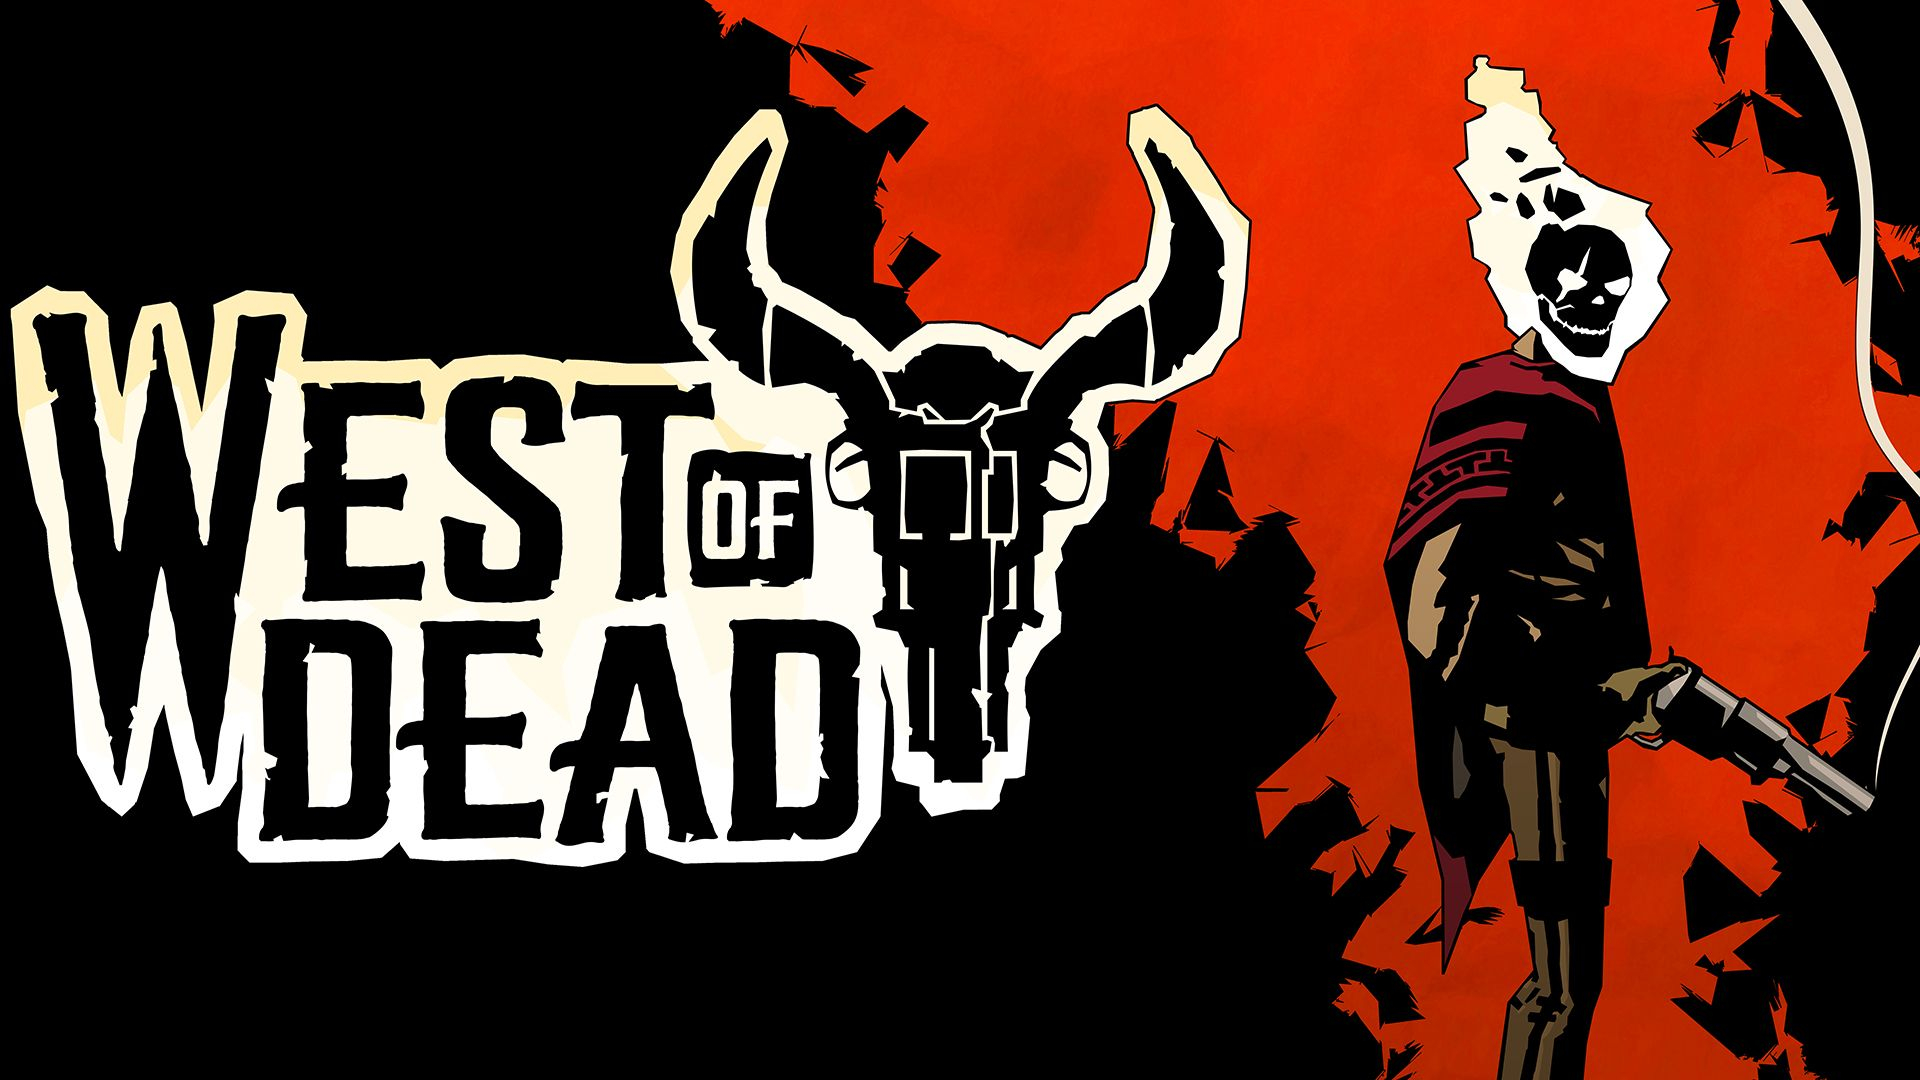 Обложка игры West of Dead